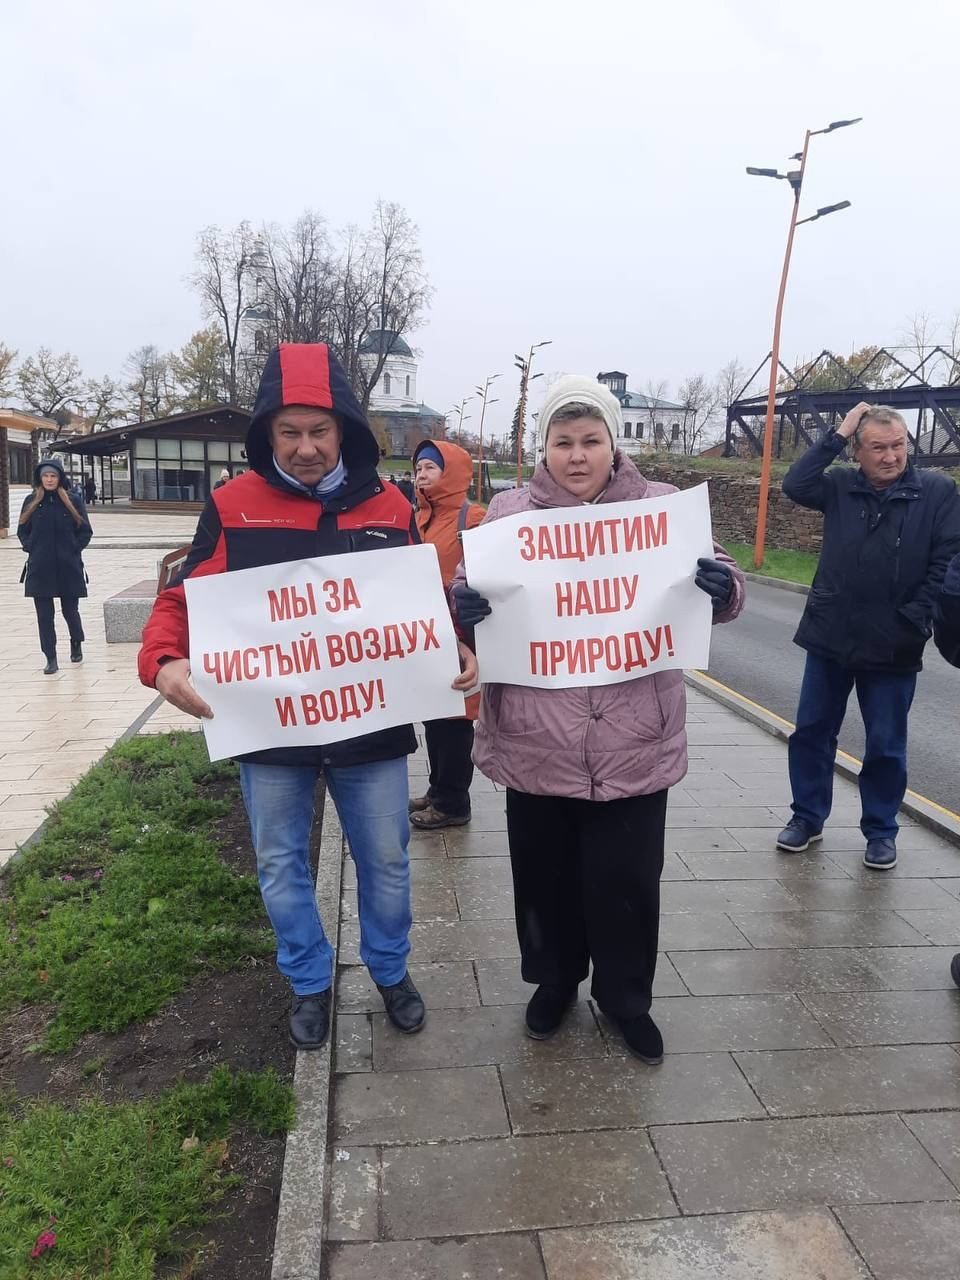 Митинг против строительства. Челябинск протест против постройки завода.